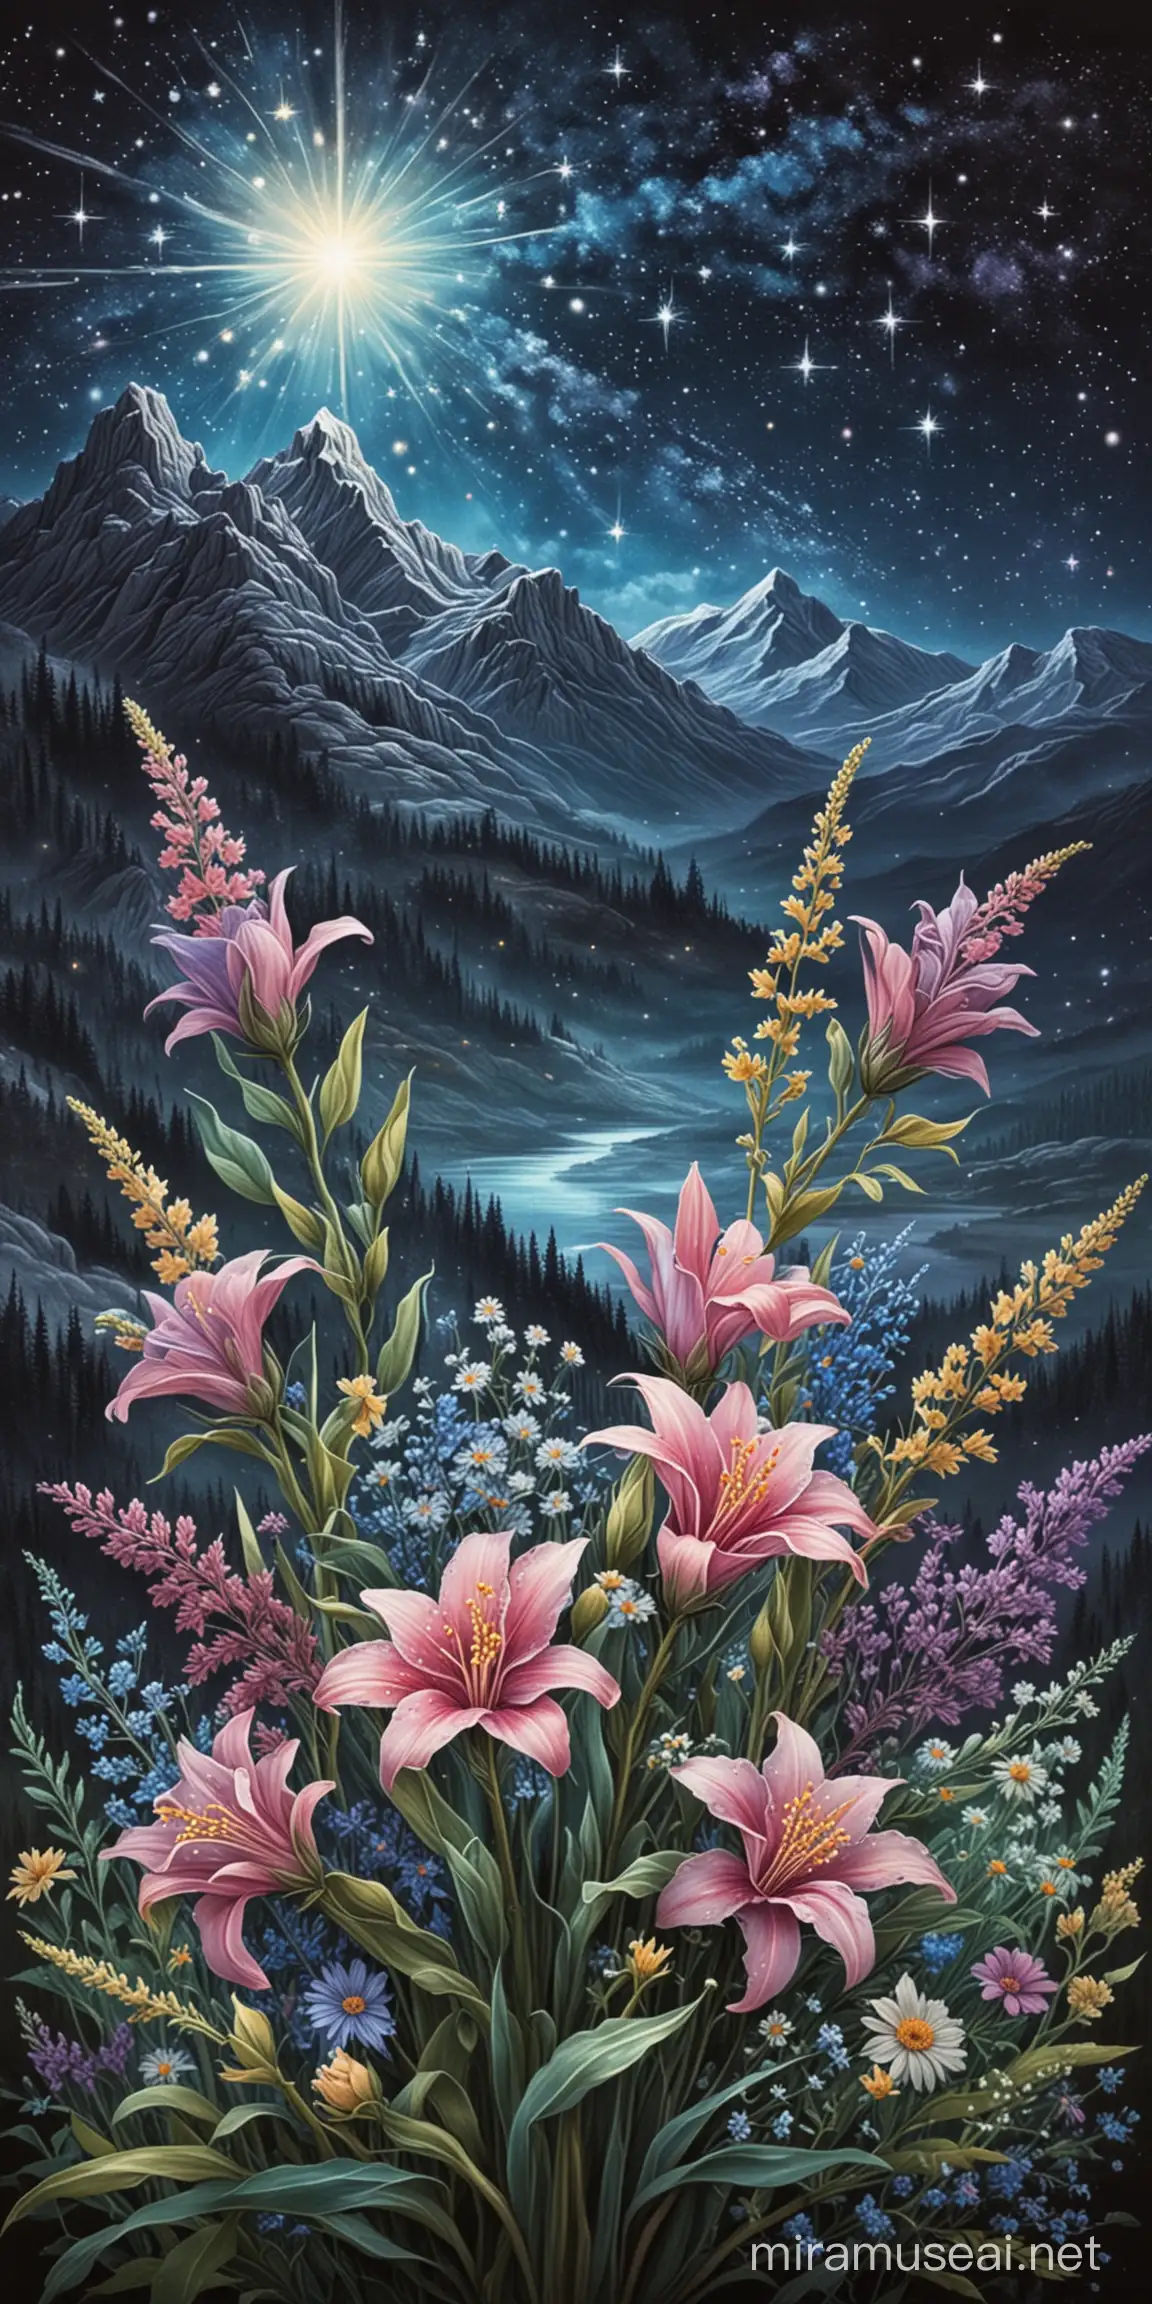 bouquet de fleurs dessin aux pastels image décors cartes art divinatoire art pastels montagne en fond ciel de nuit étoiles brillantes